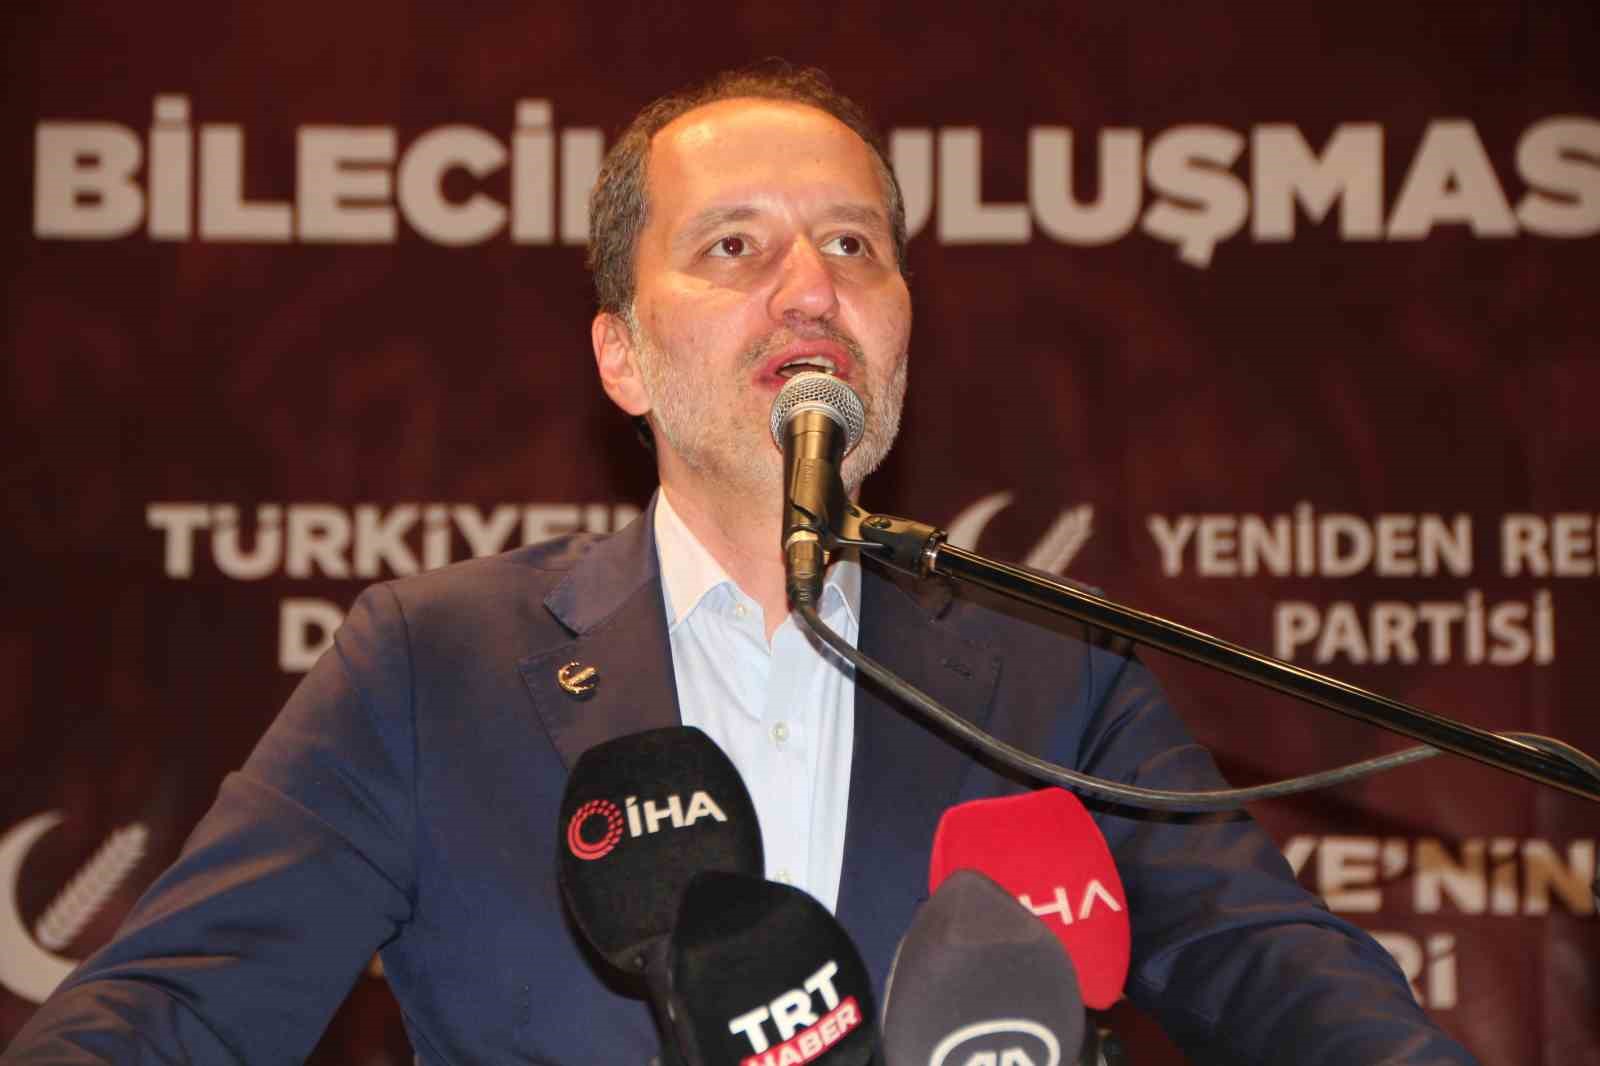 Yeniden Refah Partisi Genel Başkanı Fatih Erbakan Bilecik’te konuştu